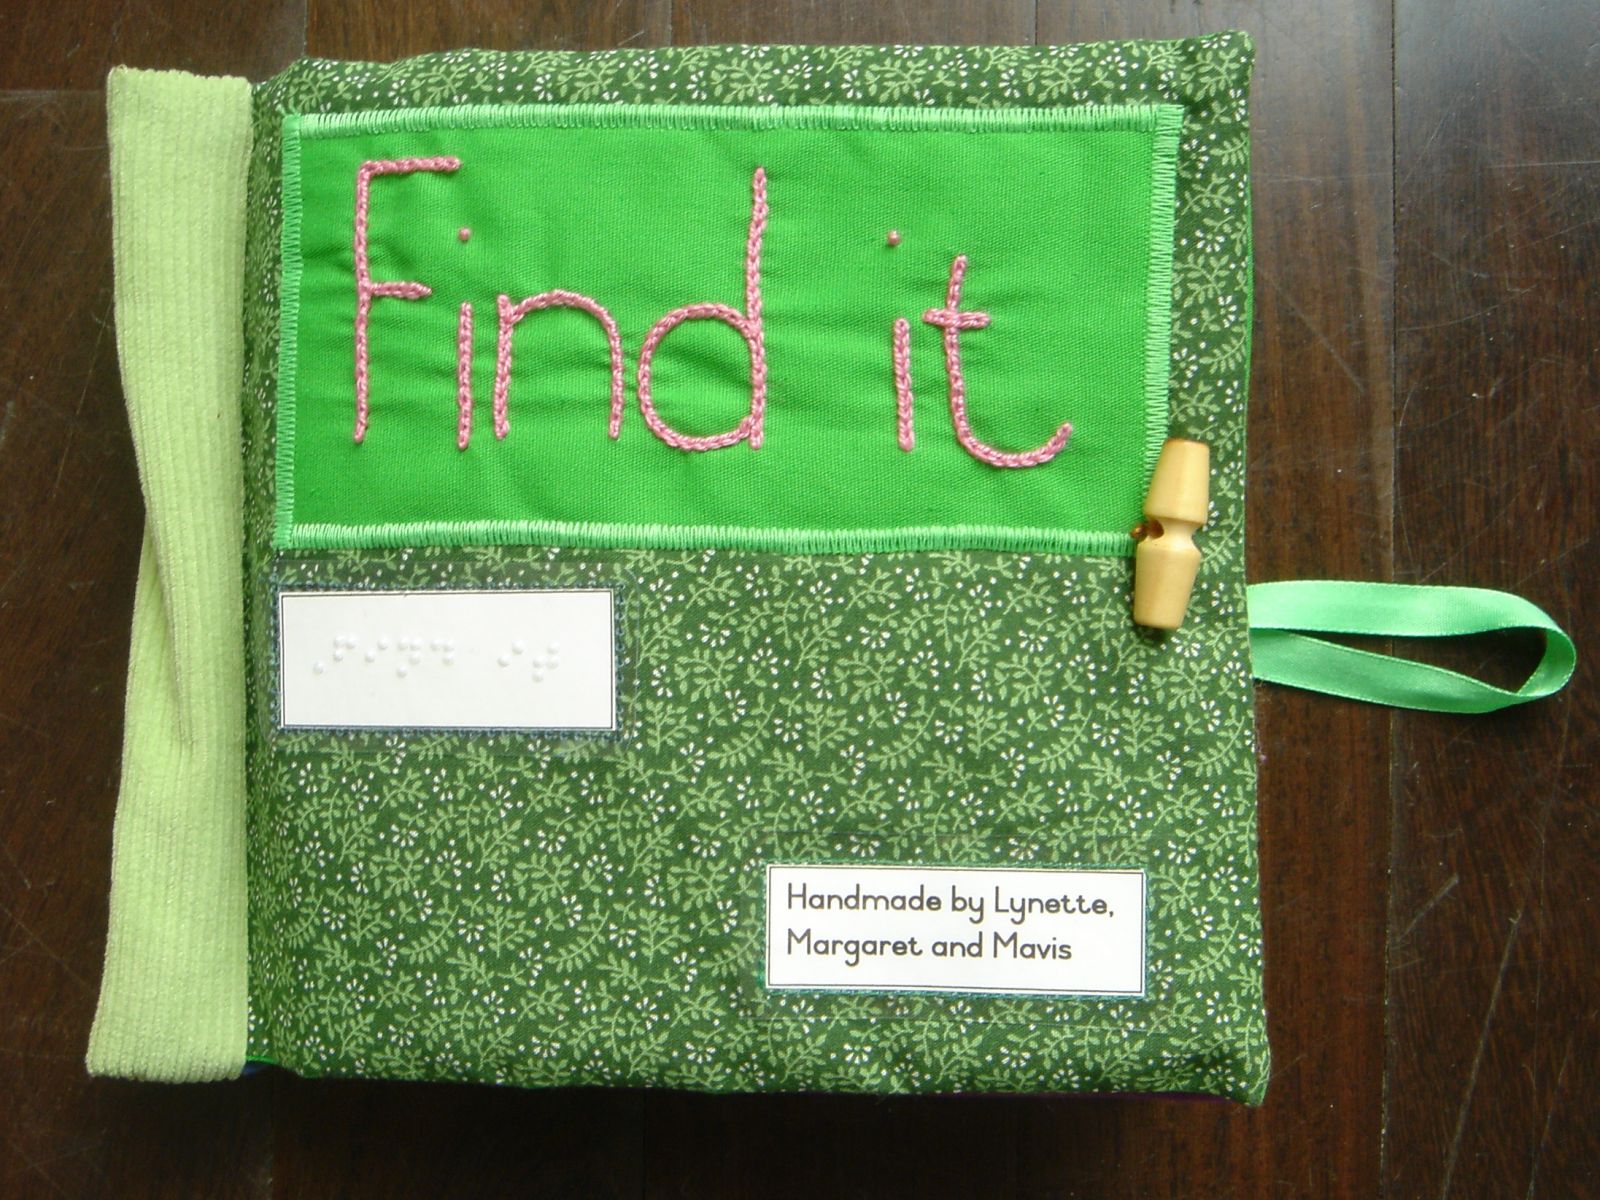 Copertina del libro tattile "Trovalo!"